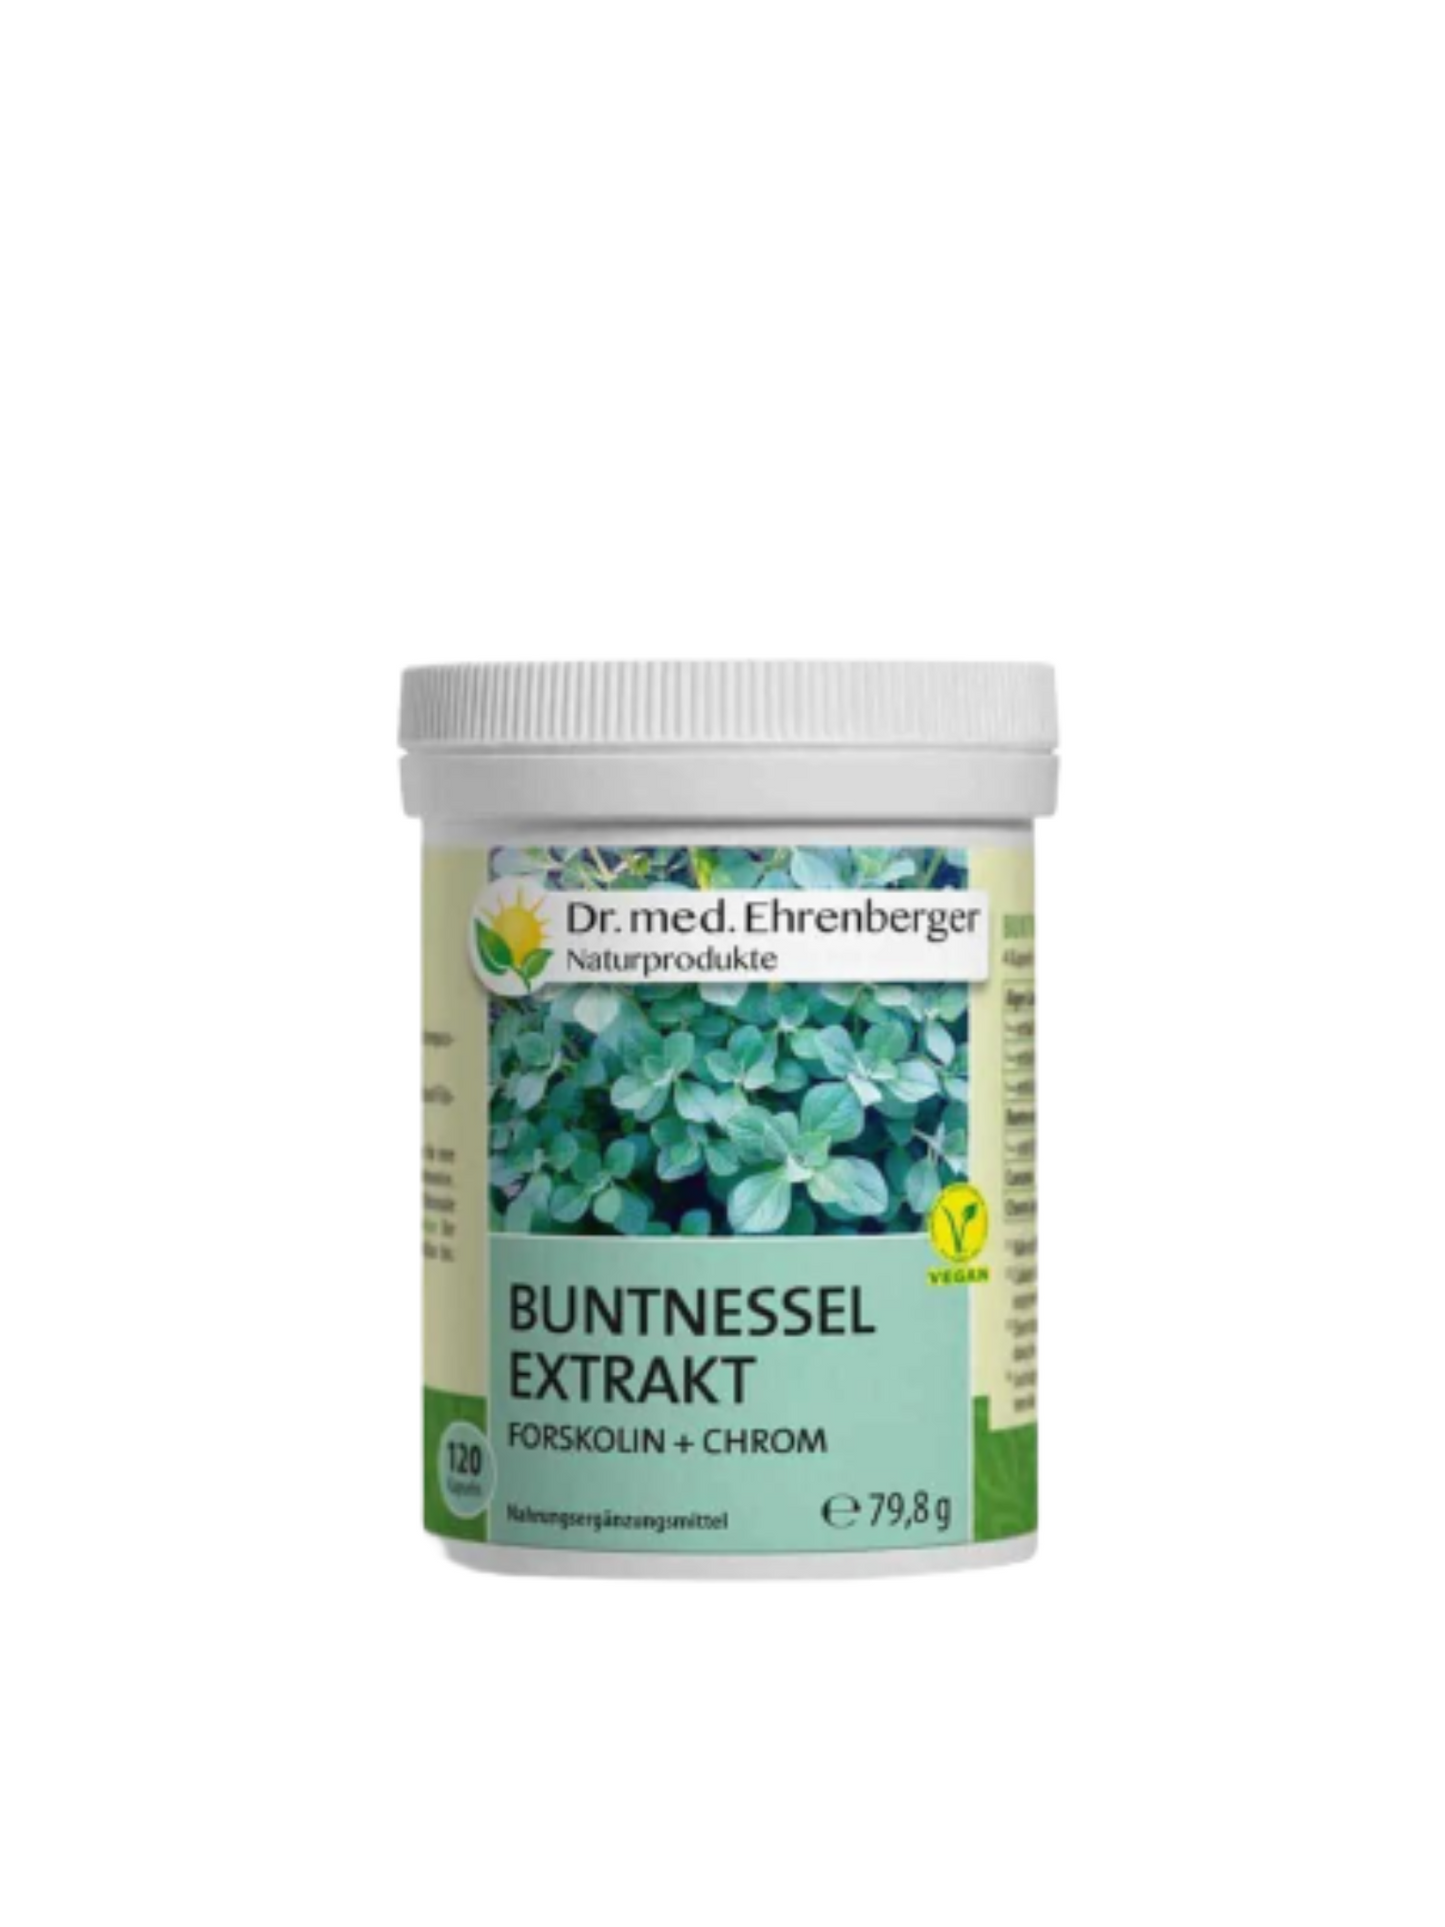 Dr. Ehrenberger - Buntnessel Extrakt Kapseln - Forskolin + Chrom